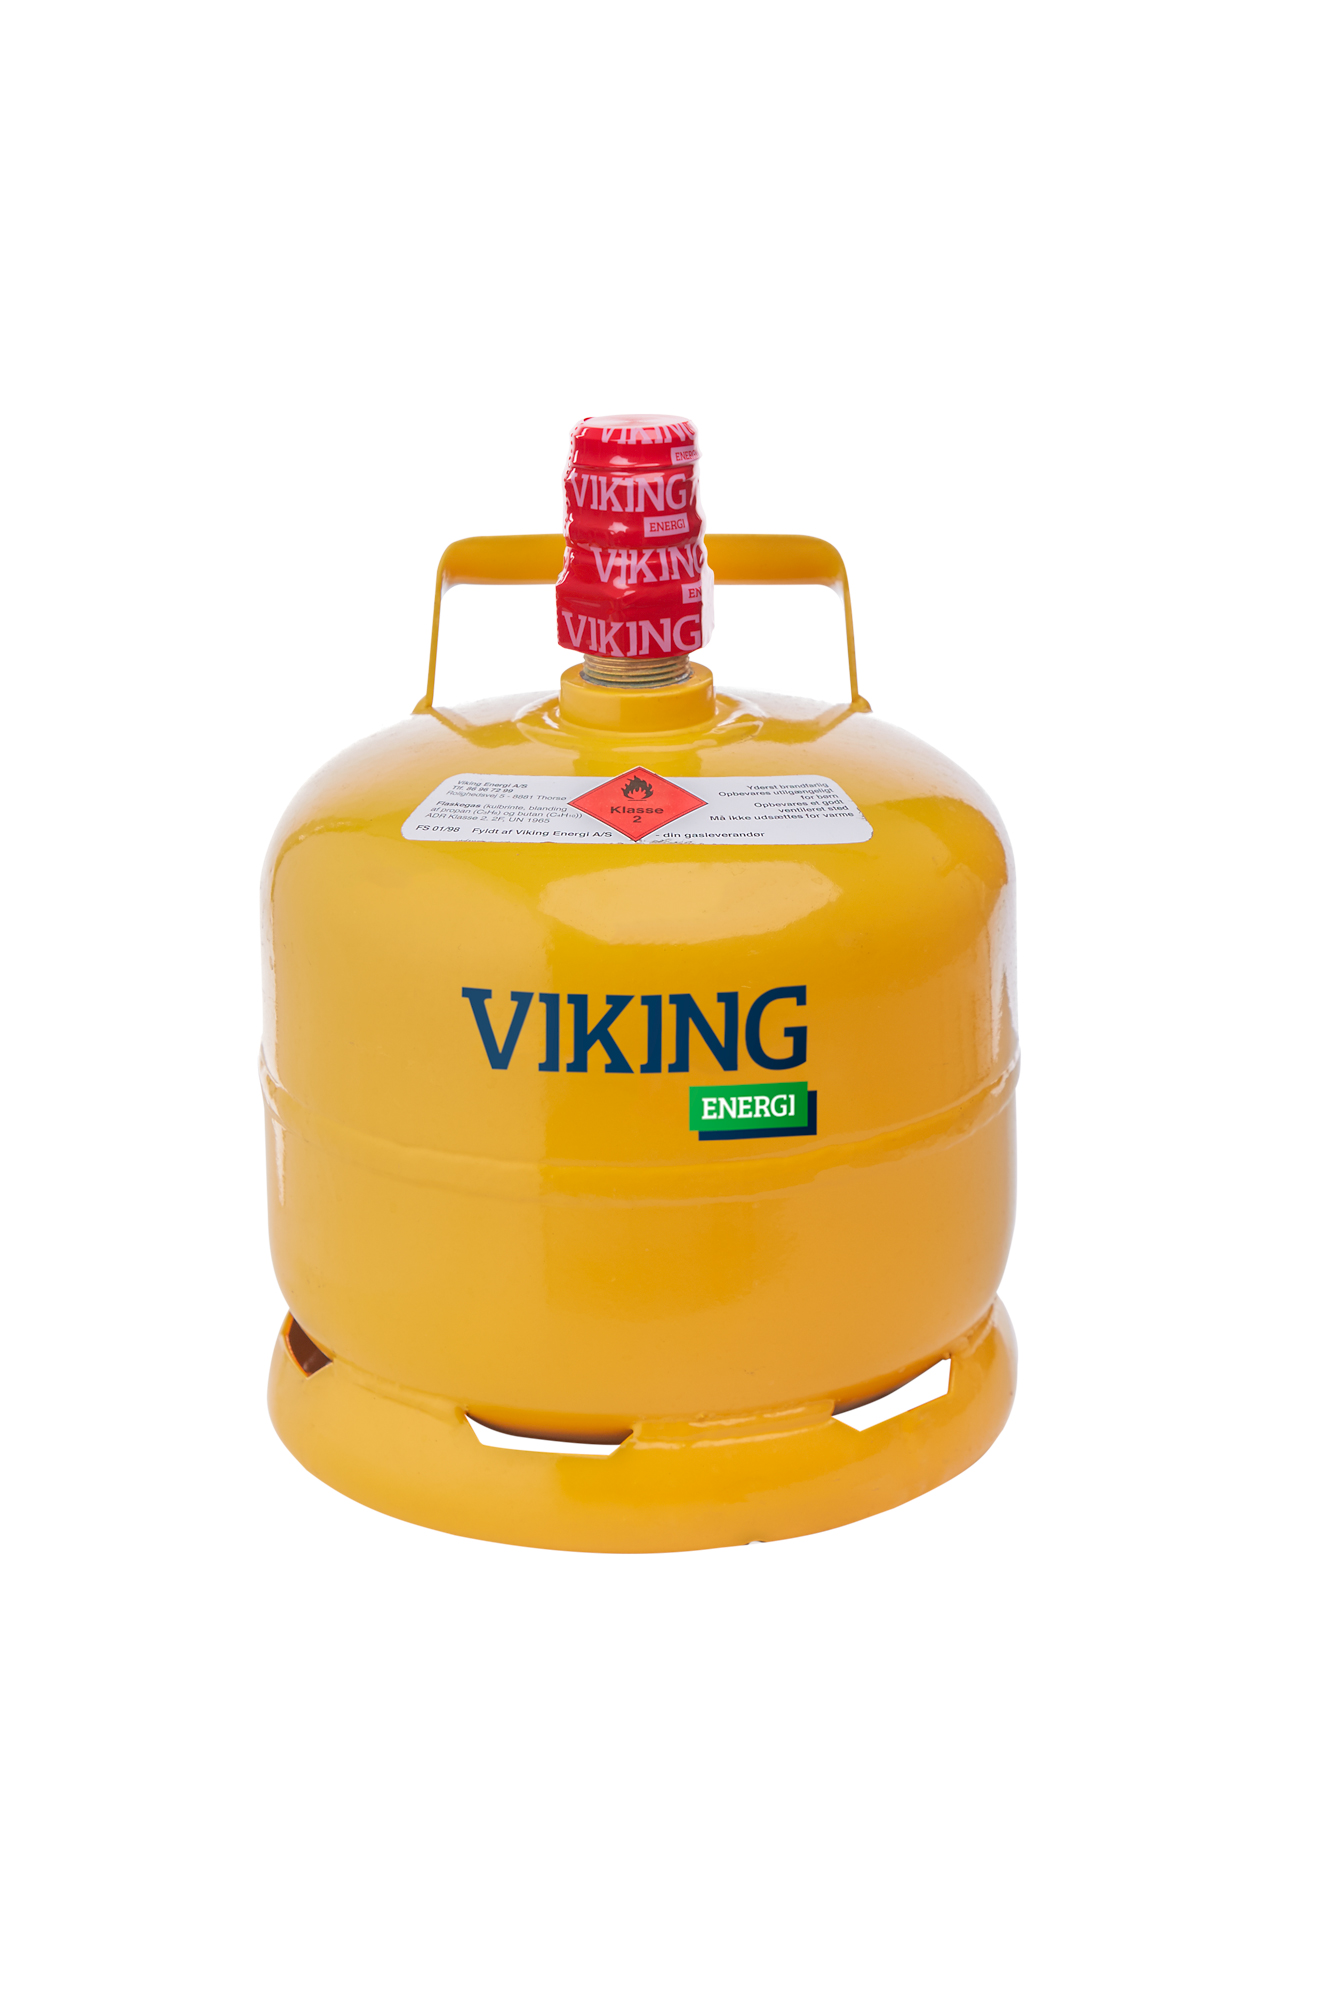 Afledning gennemse det sidste Viking gas 2 kg – Foder til dine kæledyr